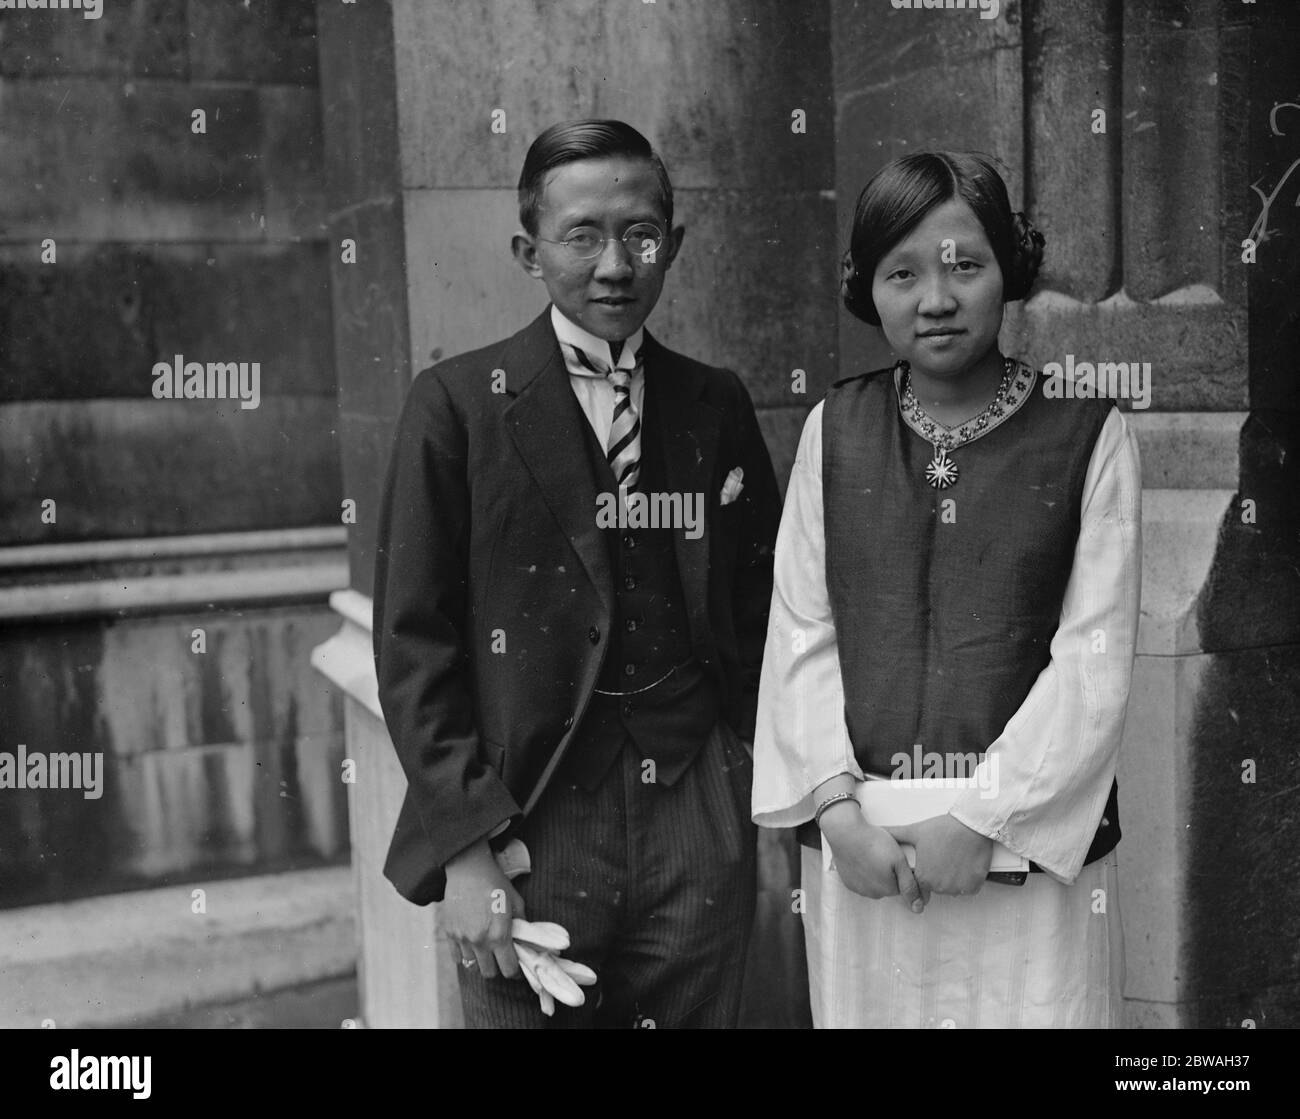 Ein Chinesischer Portia Herr Kye Sing Lim Und Seine Schwester Frau Beng Hong Lim Chinesische Anwalte Deren Gemeinsames Aufrufen An Die Bar Ein Beispielloses Ereignis Im Tempel War 17 Juni 1926 Stockfotografie Alamy